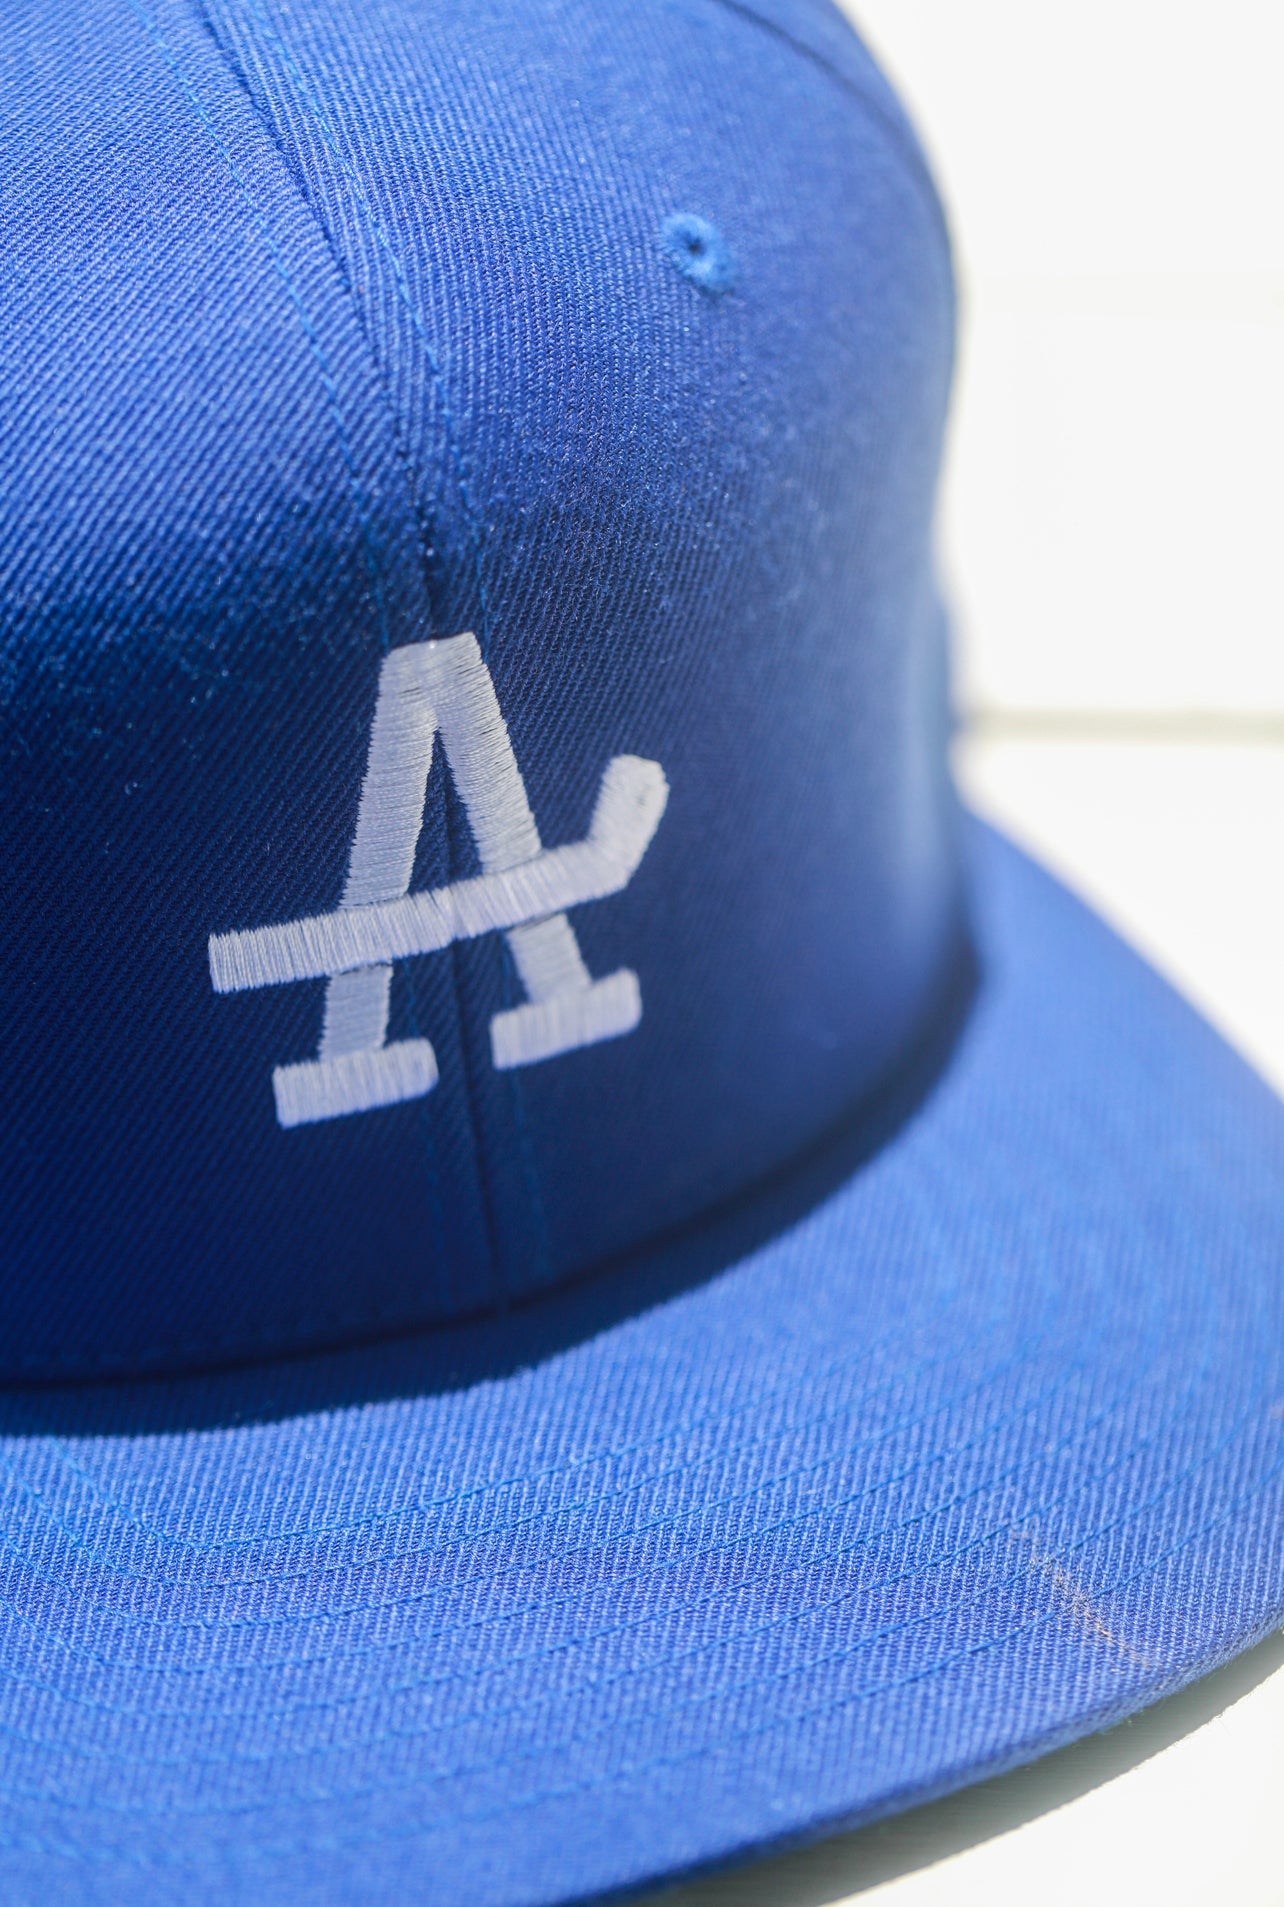 L.A. Dodgers Hat, Dodgers Hats, Baseball Cap